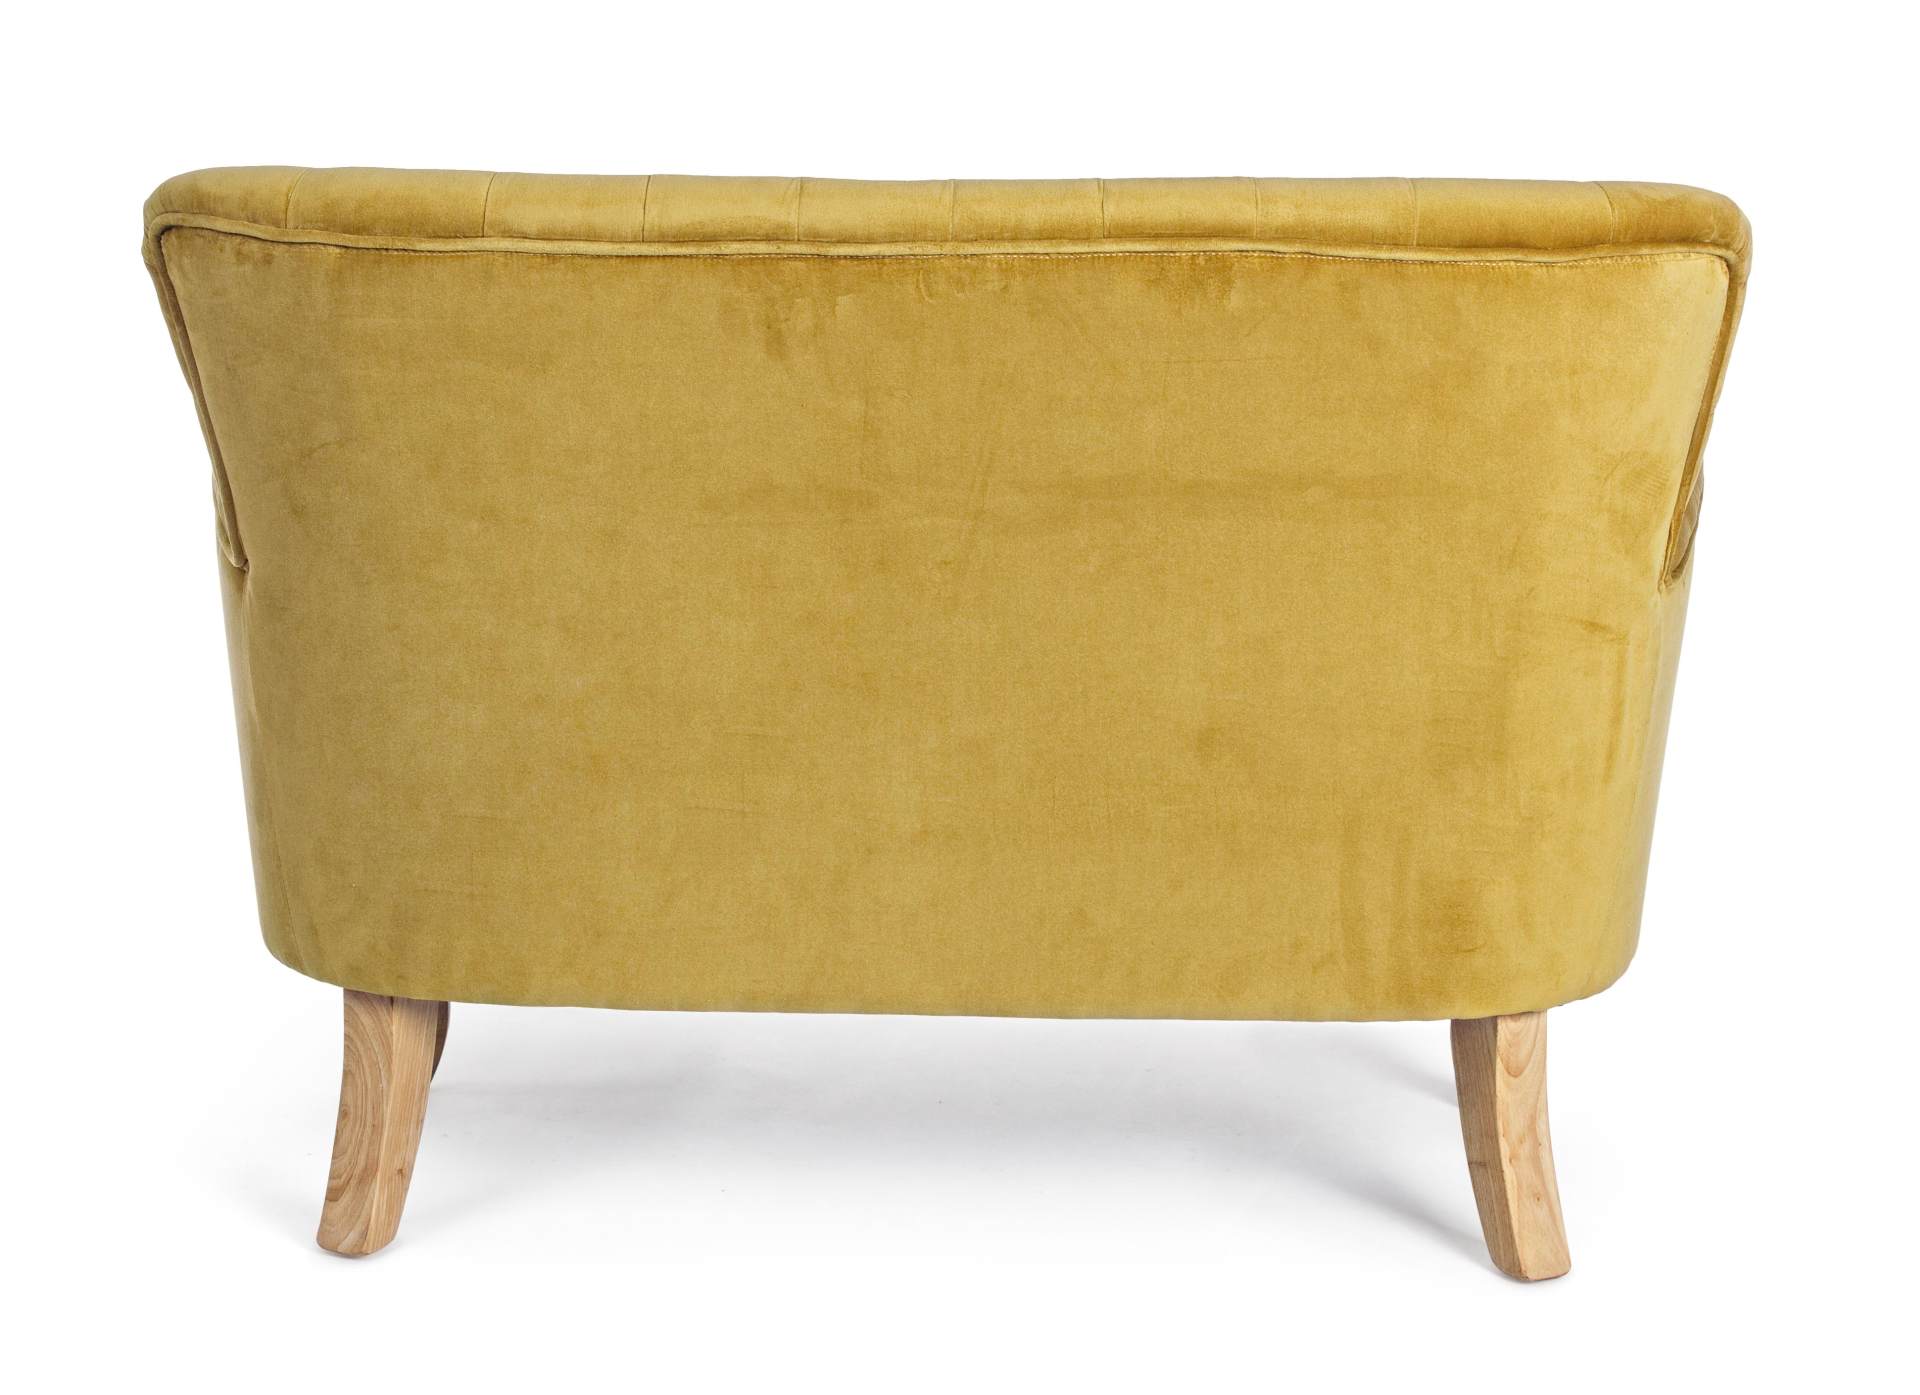 Das Sofa Orlins überzeugt mit seinem klassischen Design. Gefertigt wurde es aus Stoff in Samt-Optik, welcher einen gelben Farbton besitzt. Das Gestell ist aus Kiefernholz und hat eine natürliche Farbe. Das Sofa ist in der Ausführung als 2-Sitzer. Die Brei